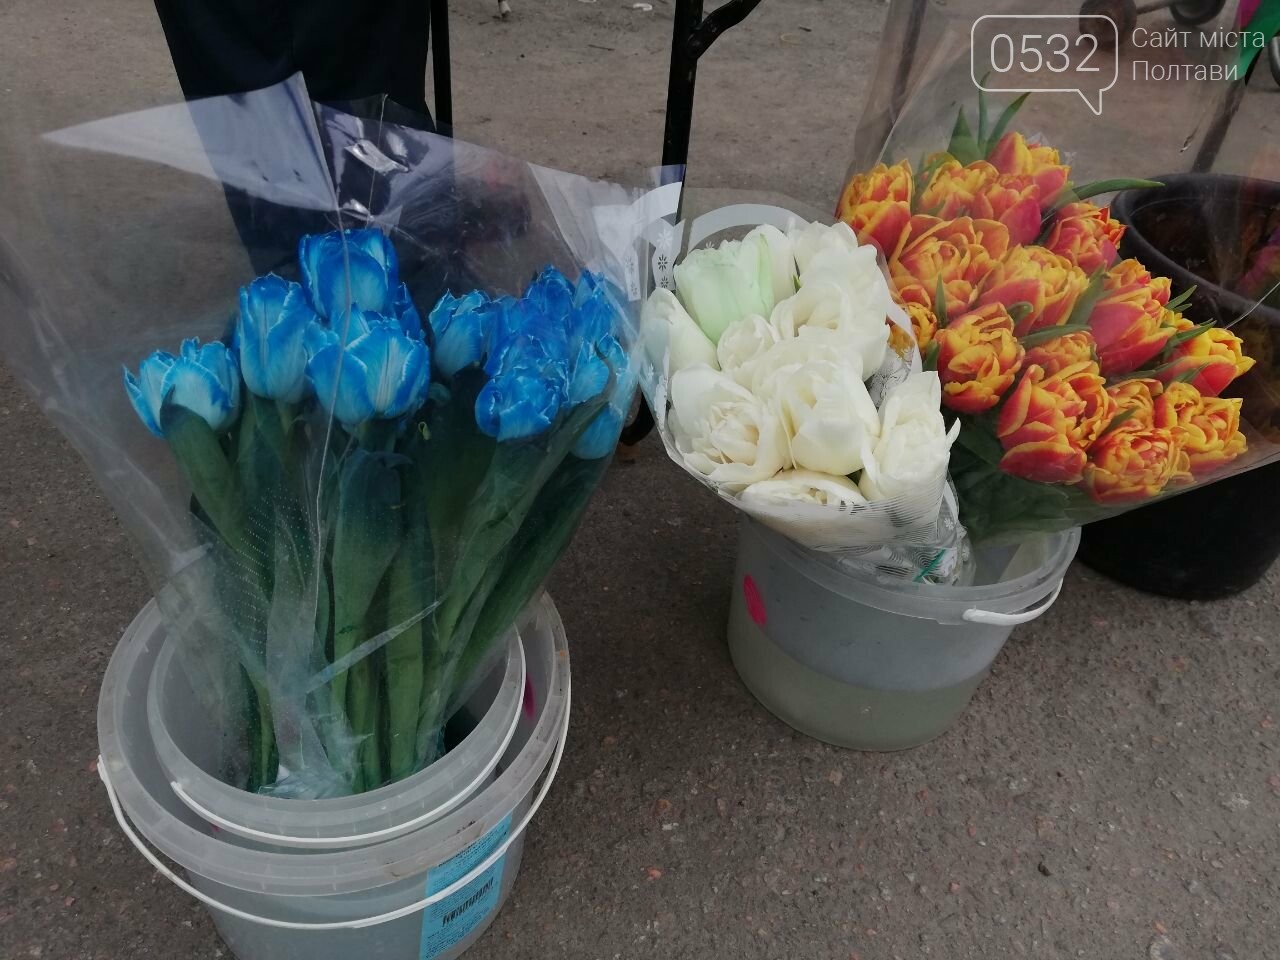 Скільки коштують тюльпани в Україні напередодні 8 березня: ціни вже кусаються